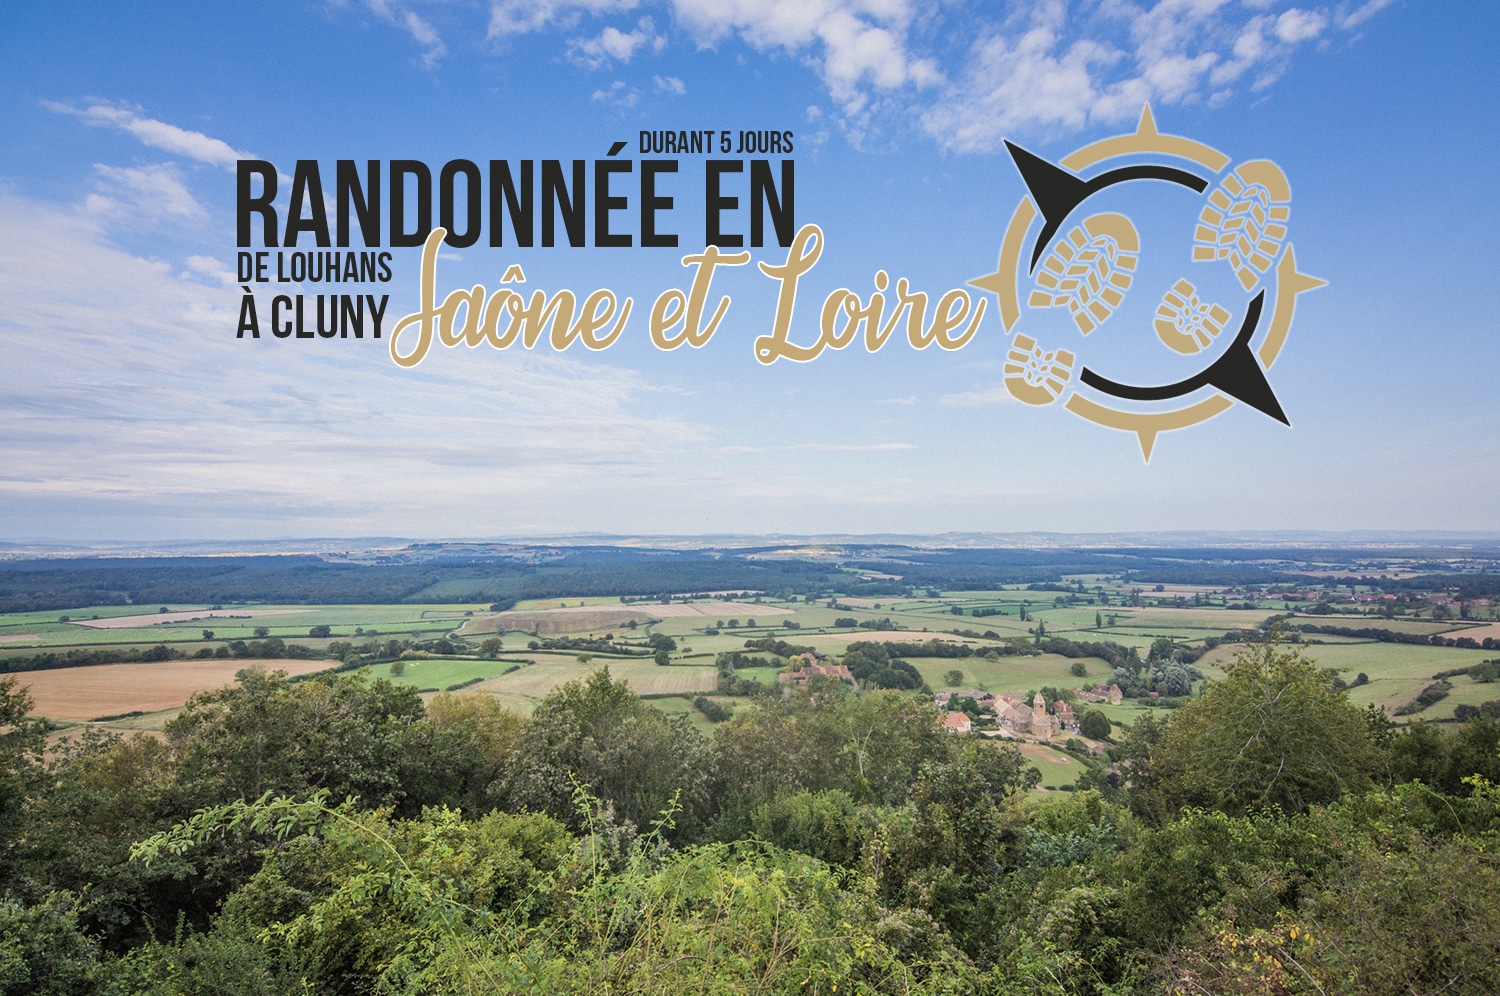 You are currently viewing Randonnée en Saône-et-Loire durant 5 jours